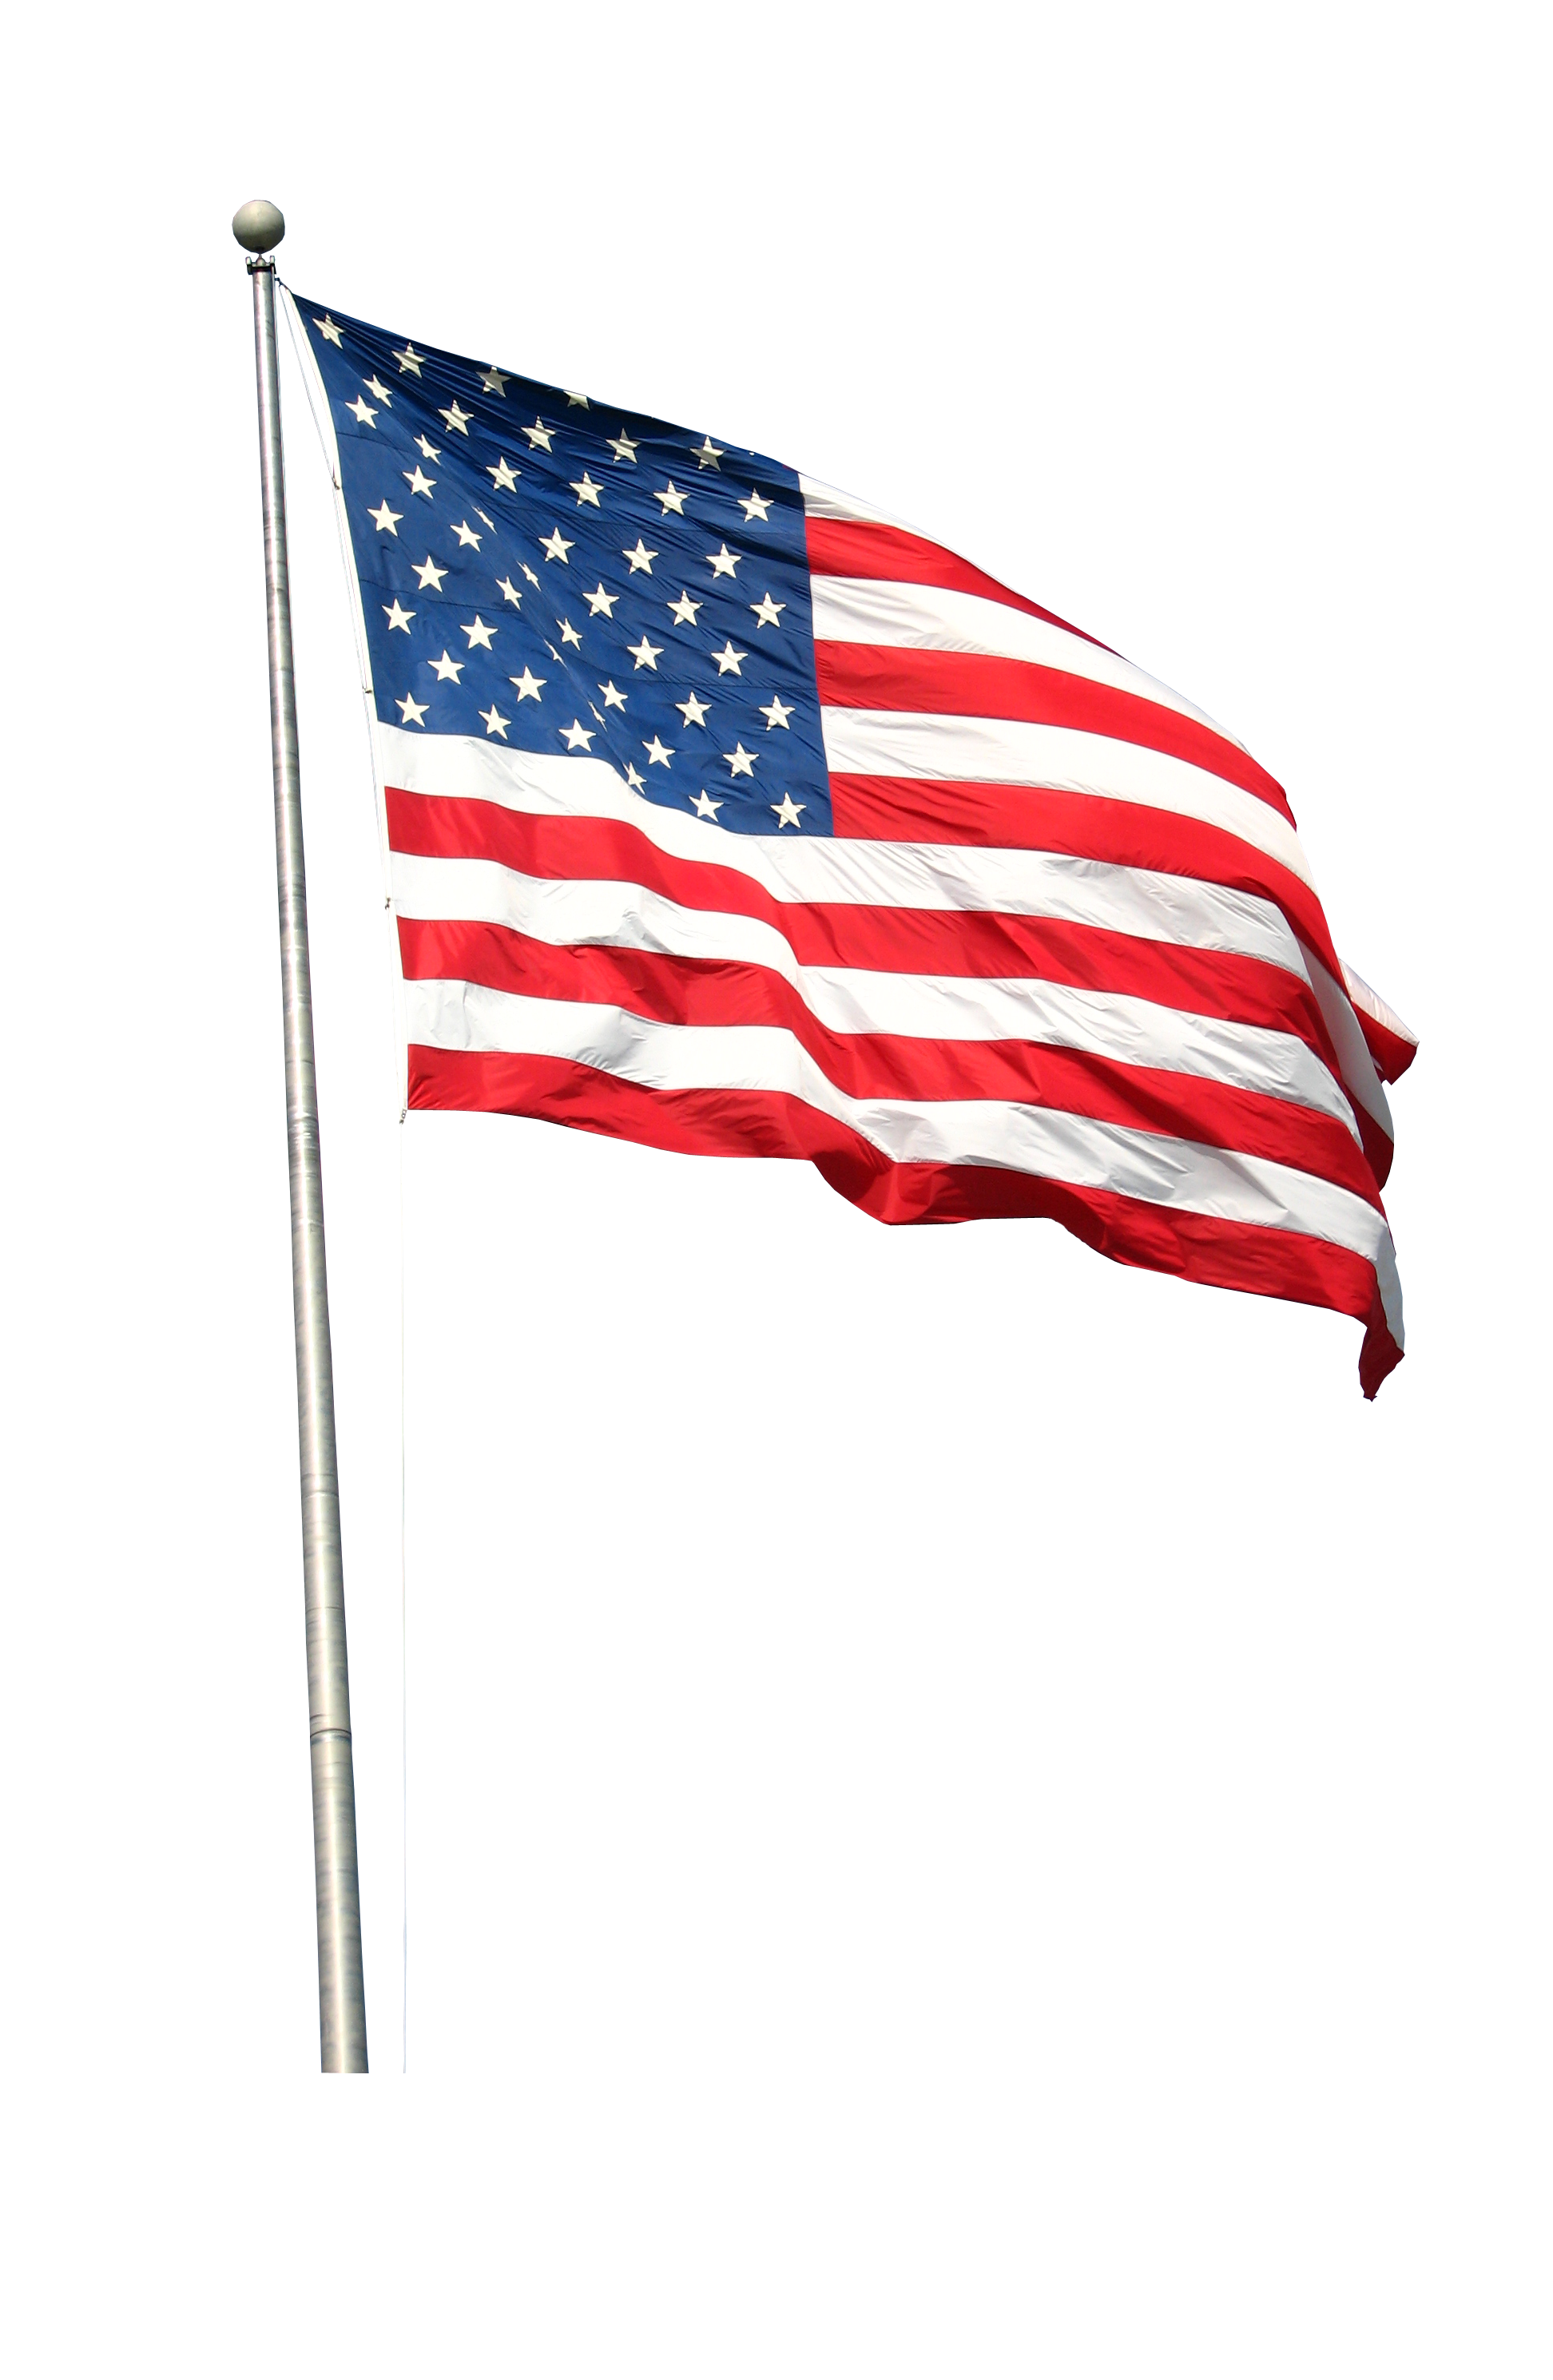 USA Flag PNG HD Image